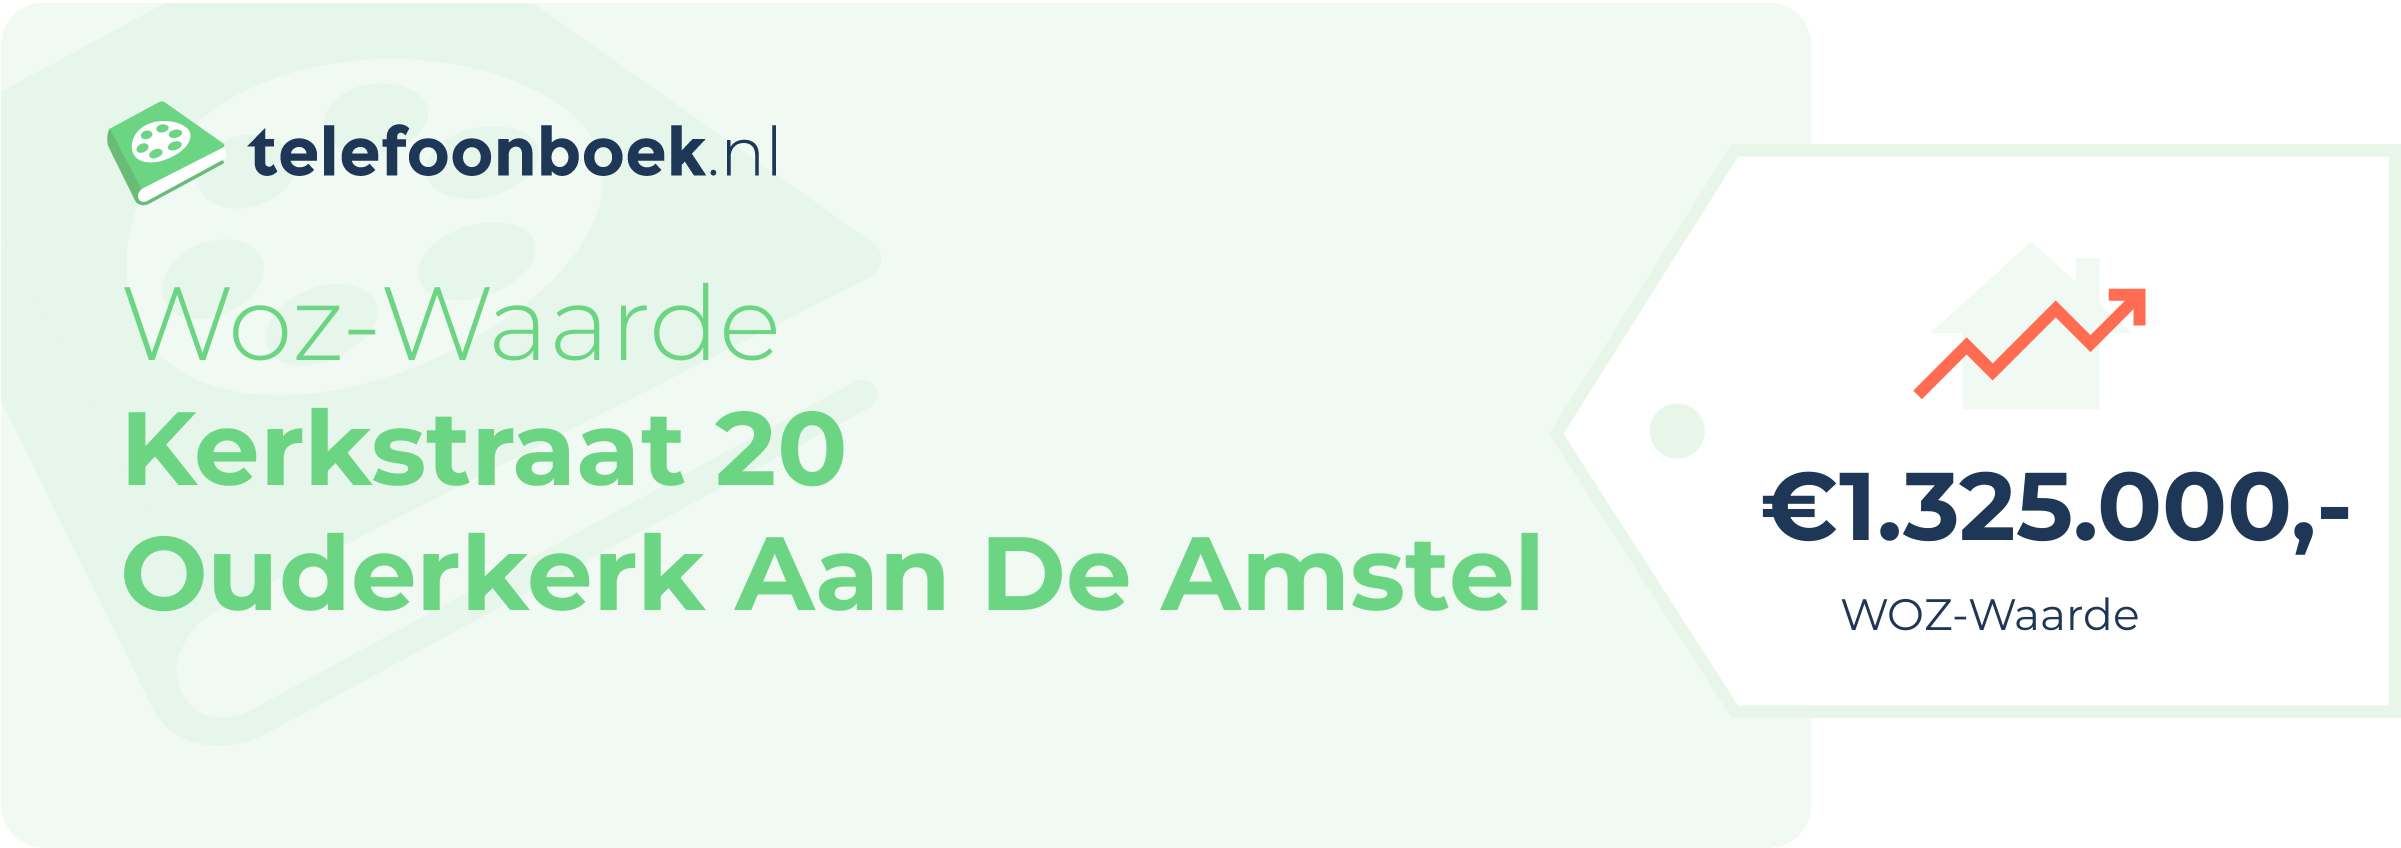 WOZ-waarde Kerkstraat 20 Ouderkerk Aan De Amstel